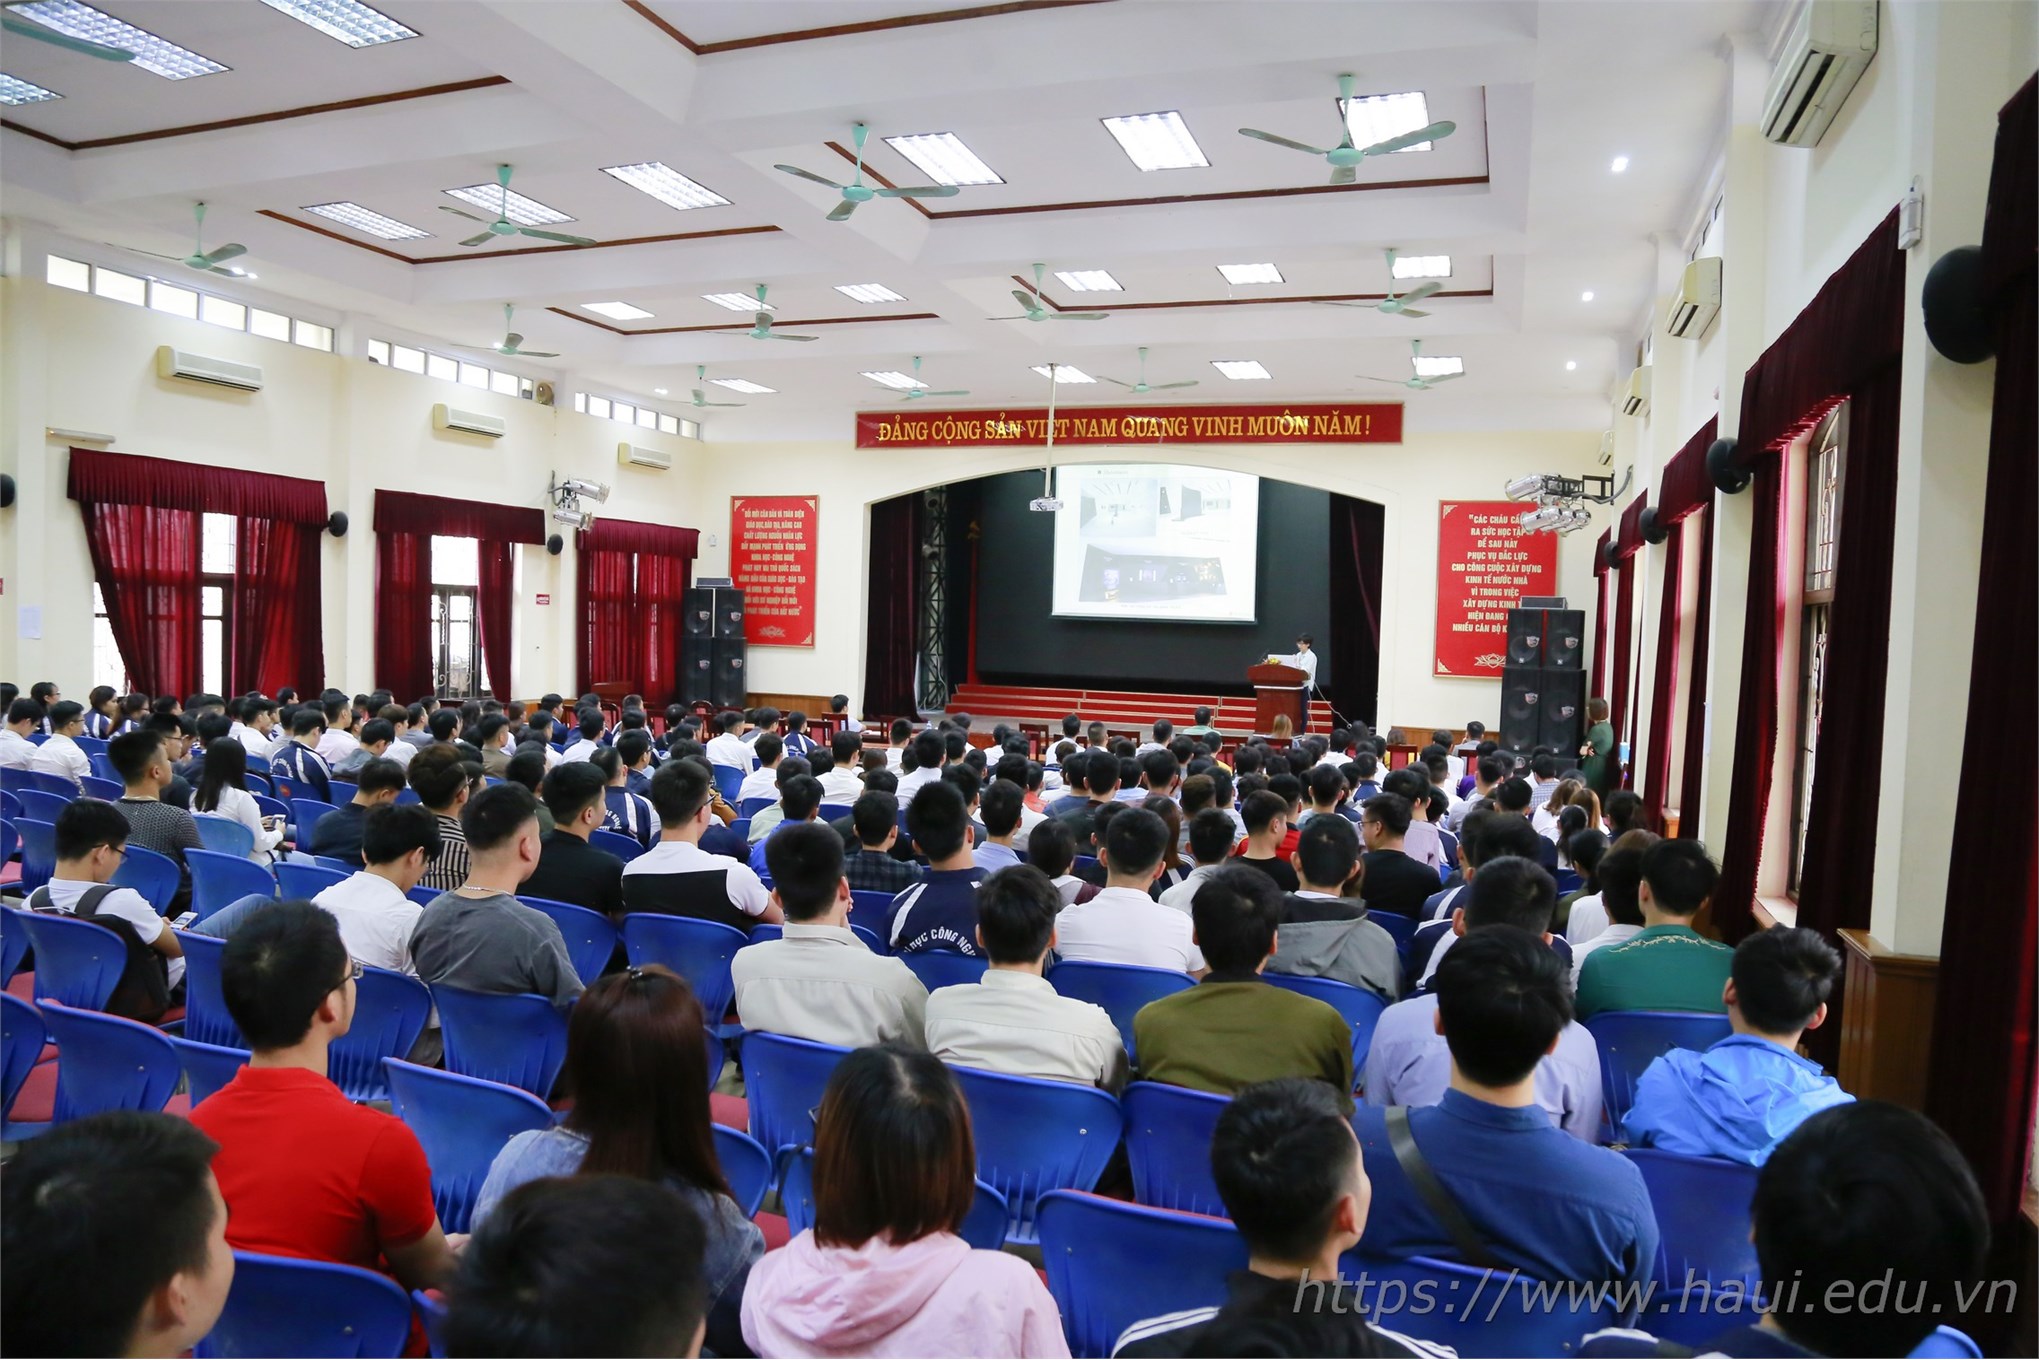 Hơn 700 cơ hội việc làm cho sinh viên ĐHCNHN tại LG Display Việt Nam Hải Phòng